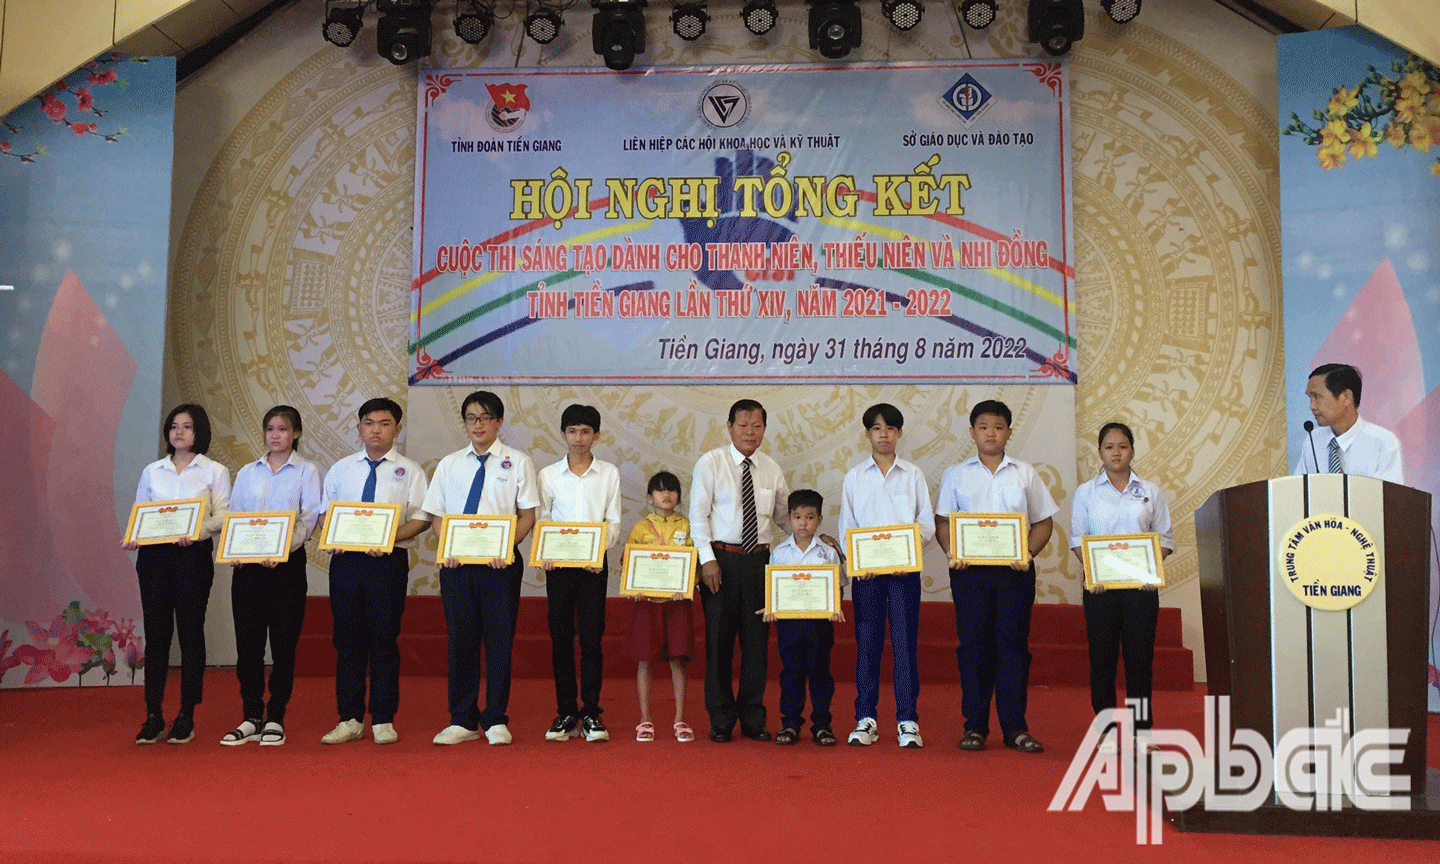 Sáng 31-8, Liên hiệp các Hội Khoa học và Kỹ thuật tỉnh Tiền Giang tổ chức Tổng kết cuộc thi sáng tạo dành cho thanh niên, thiếu niên và nhi đồng tỉnh Tiền Giang lần thứ XIV, năm 2021 – 2022. 